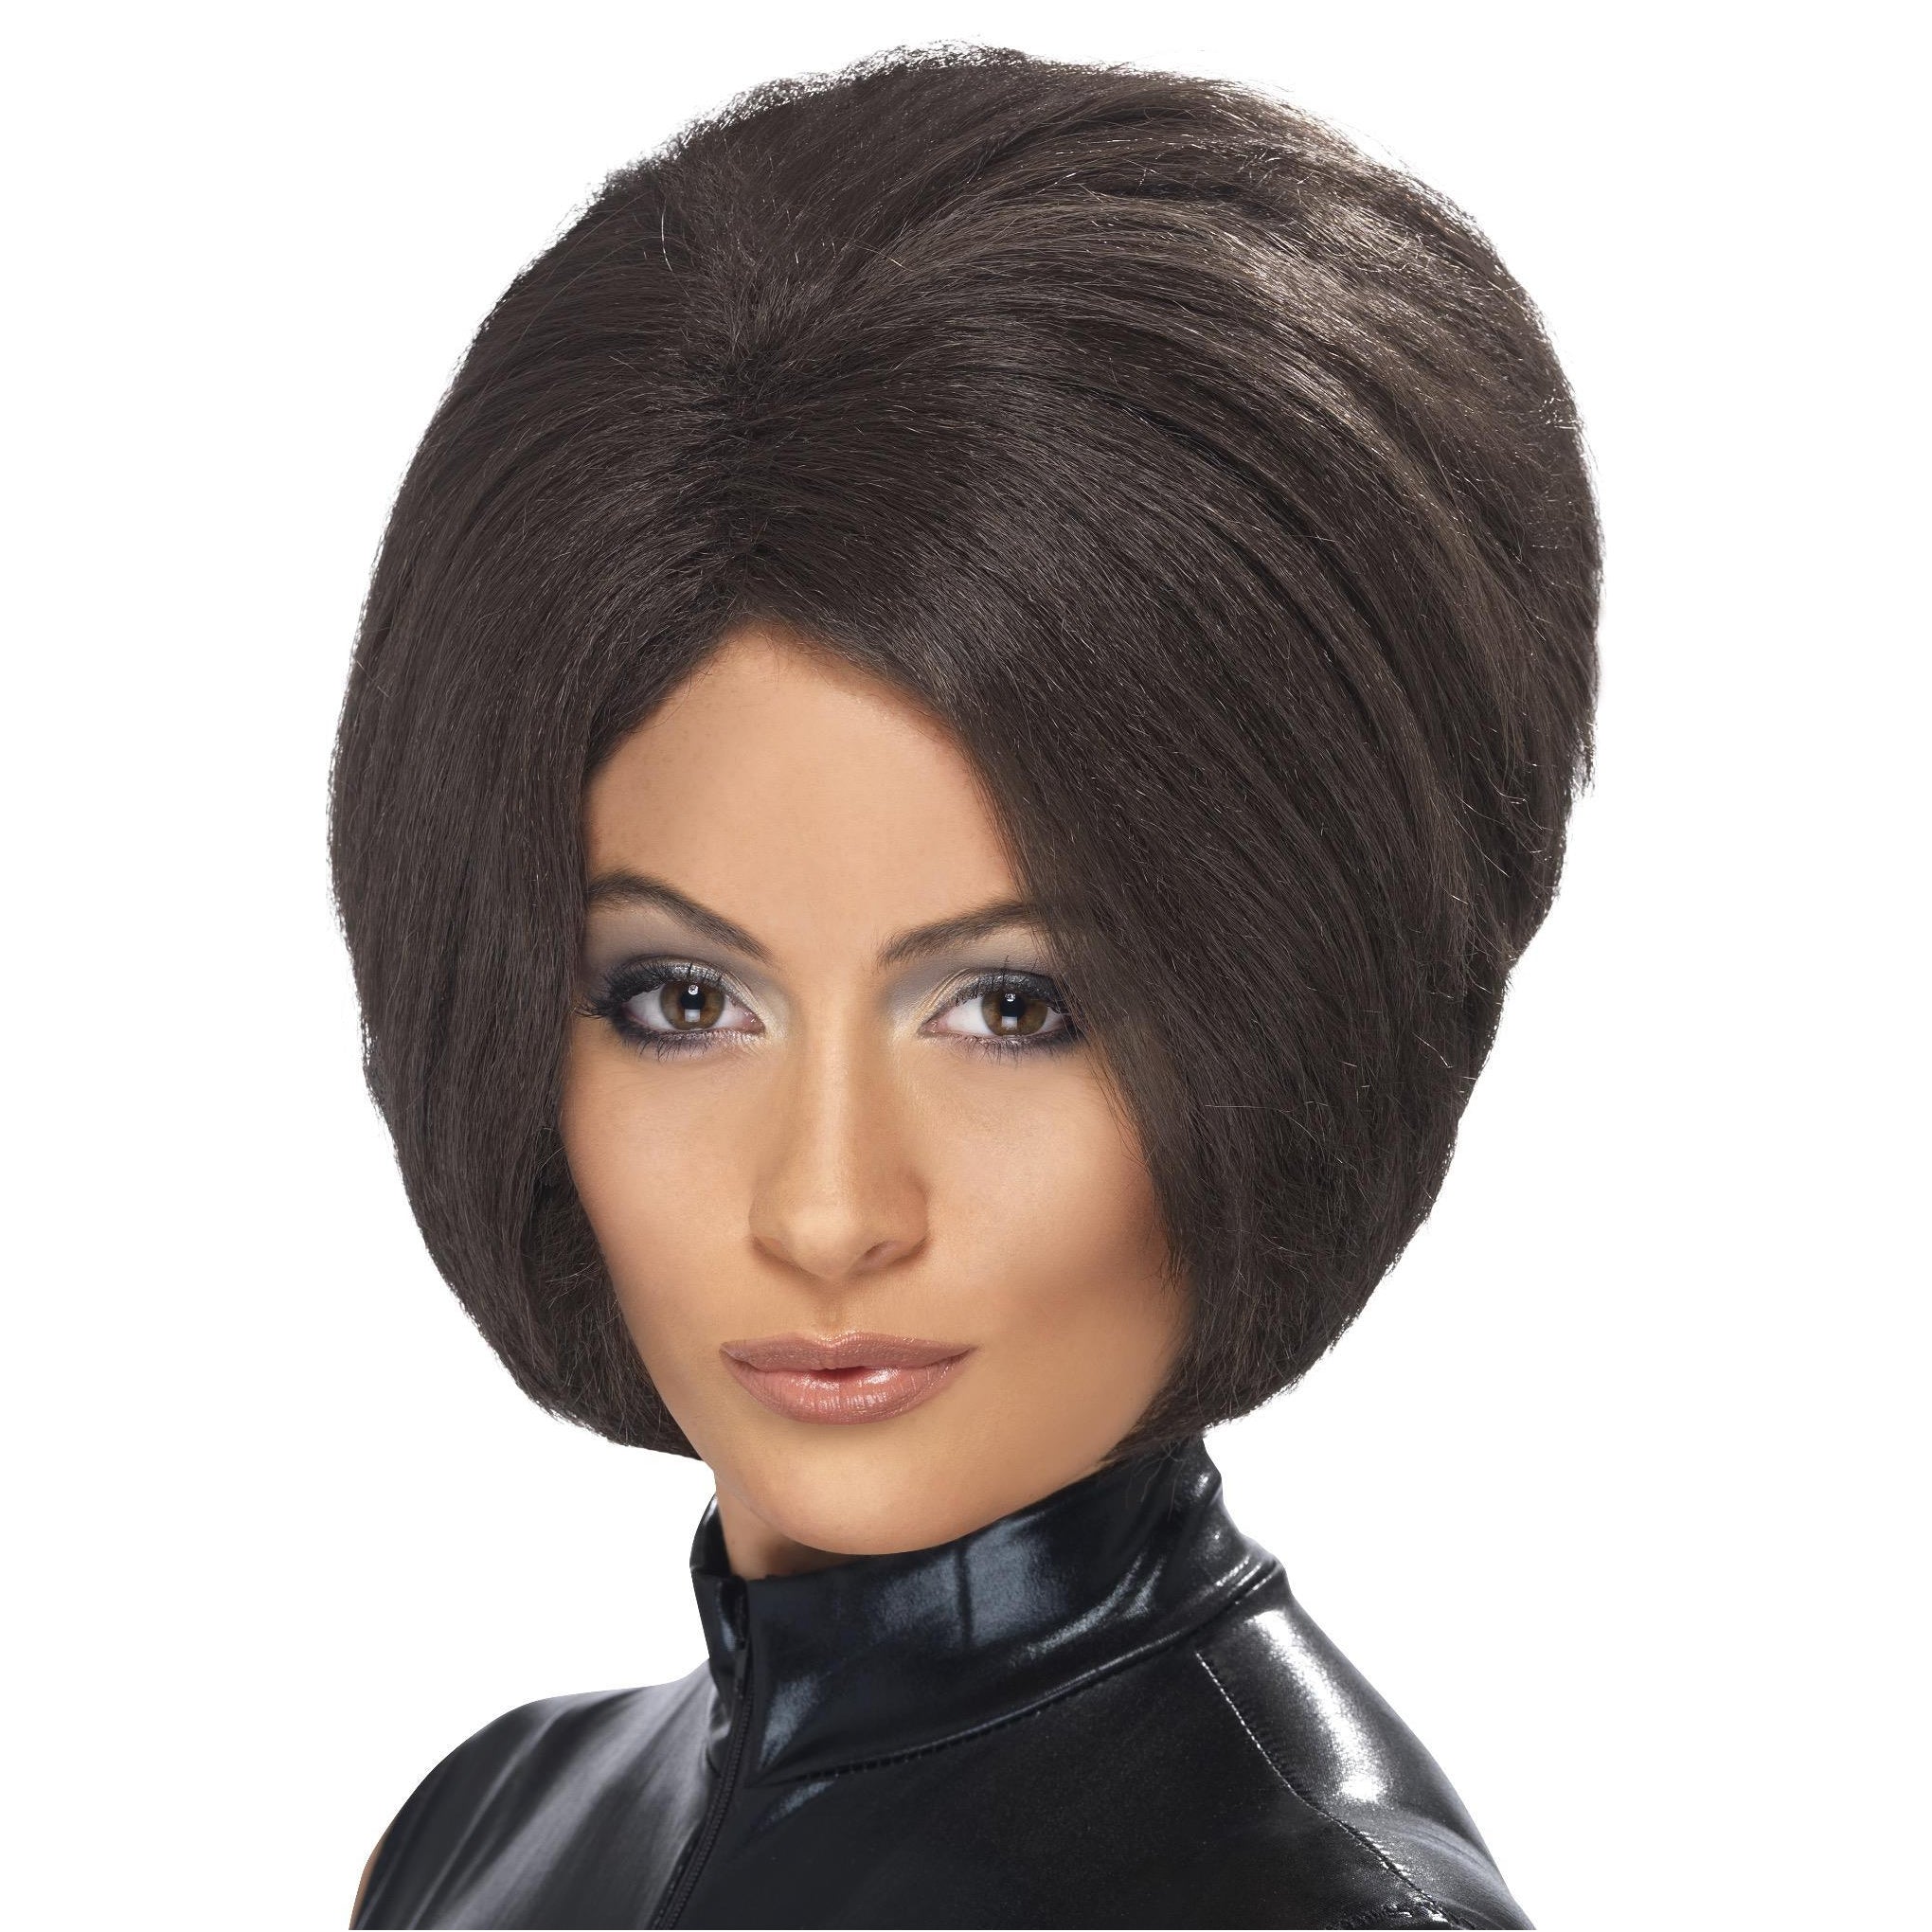 Brown posh spice Victoria Beckham style wig